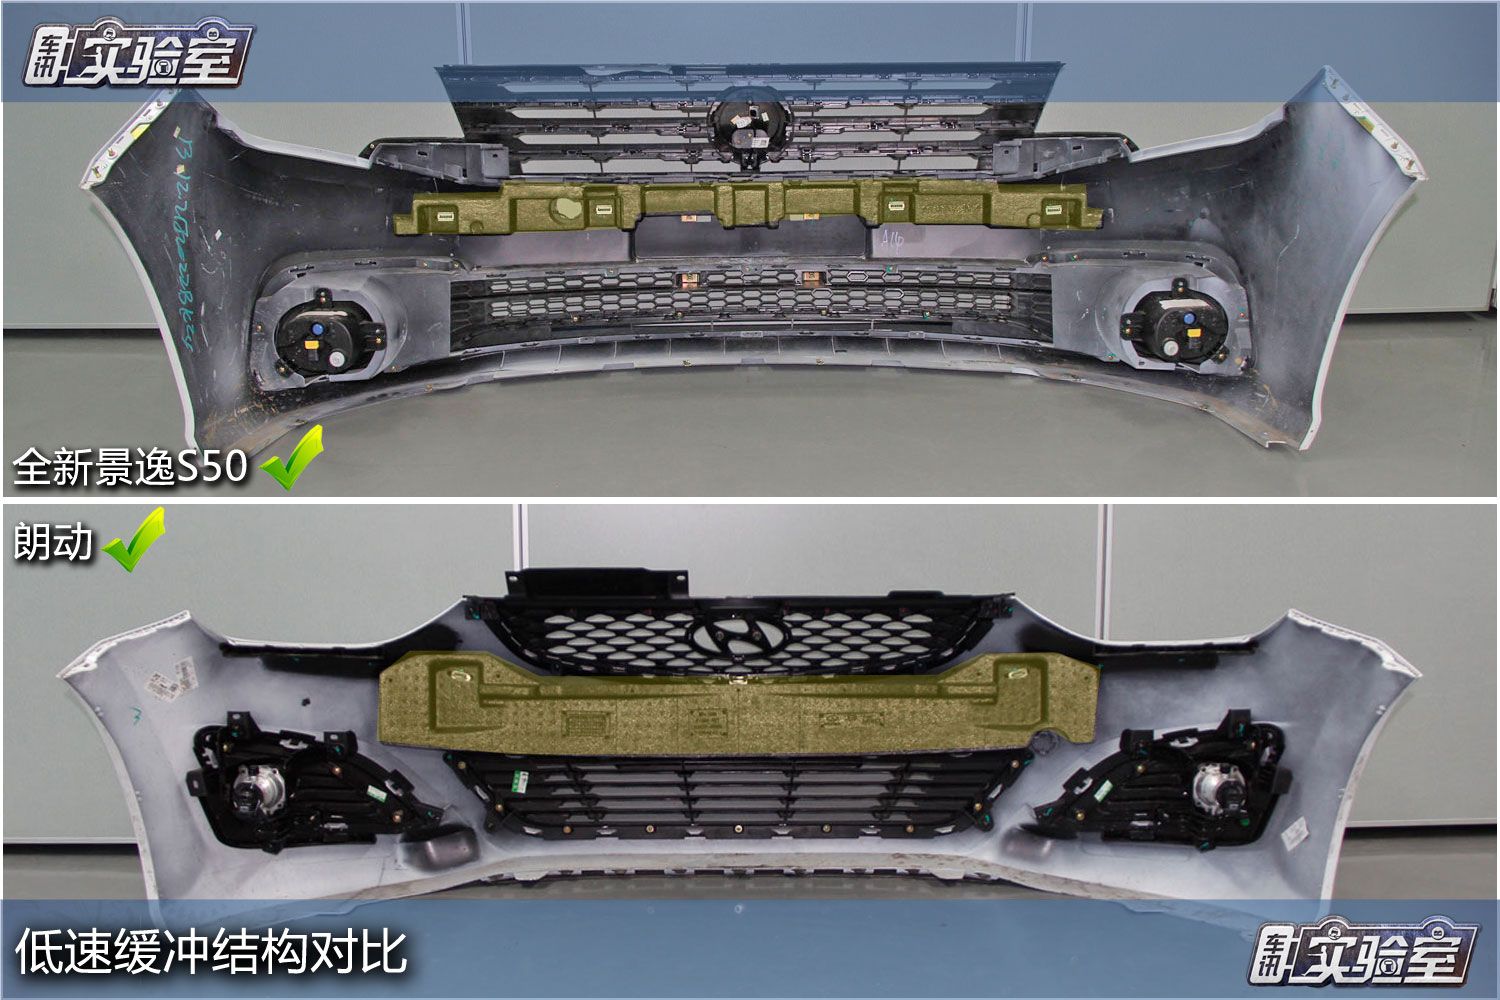 全新景逸S50VS北京现代朗动 拆解见高低